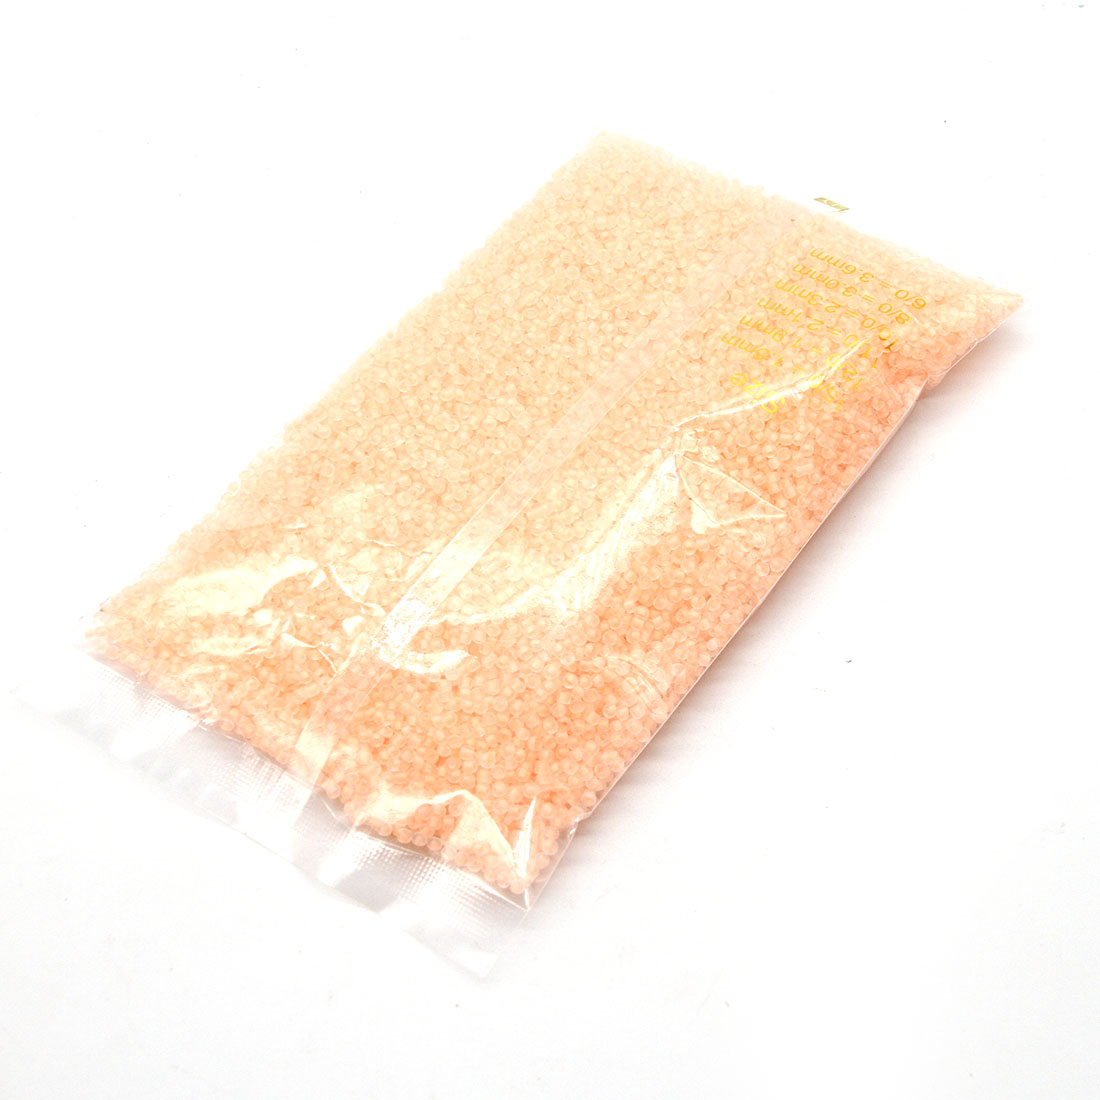 Light orange 3mm 10,000 packs